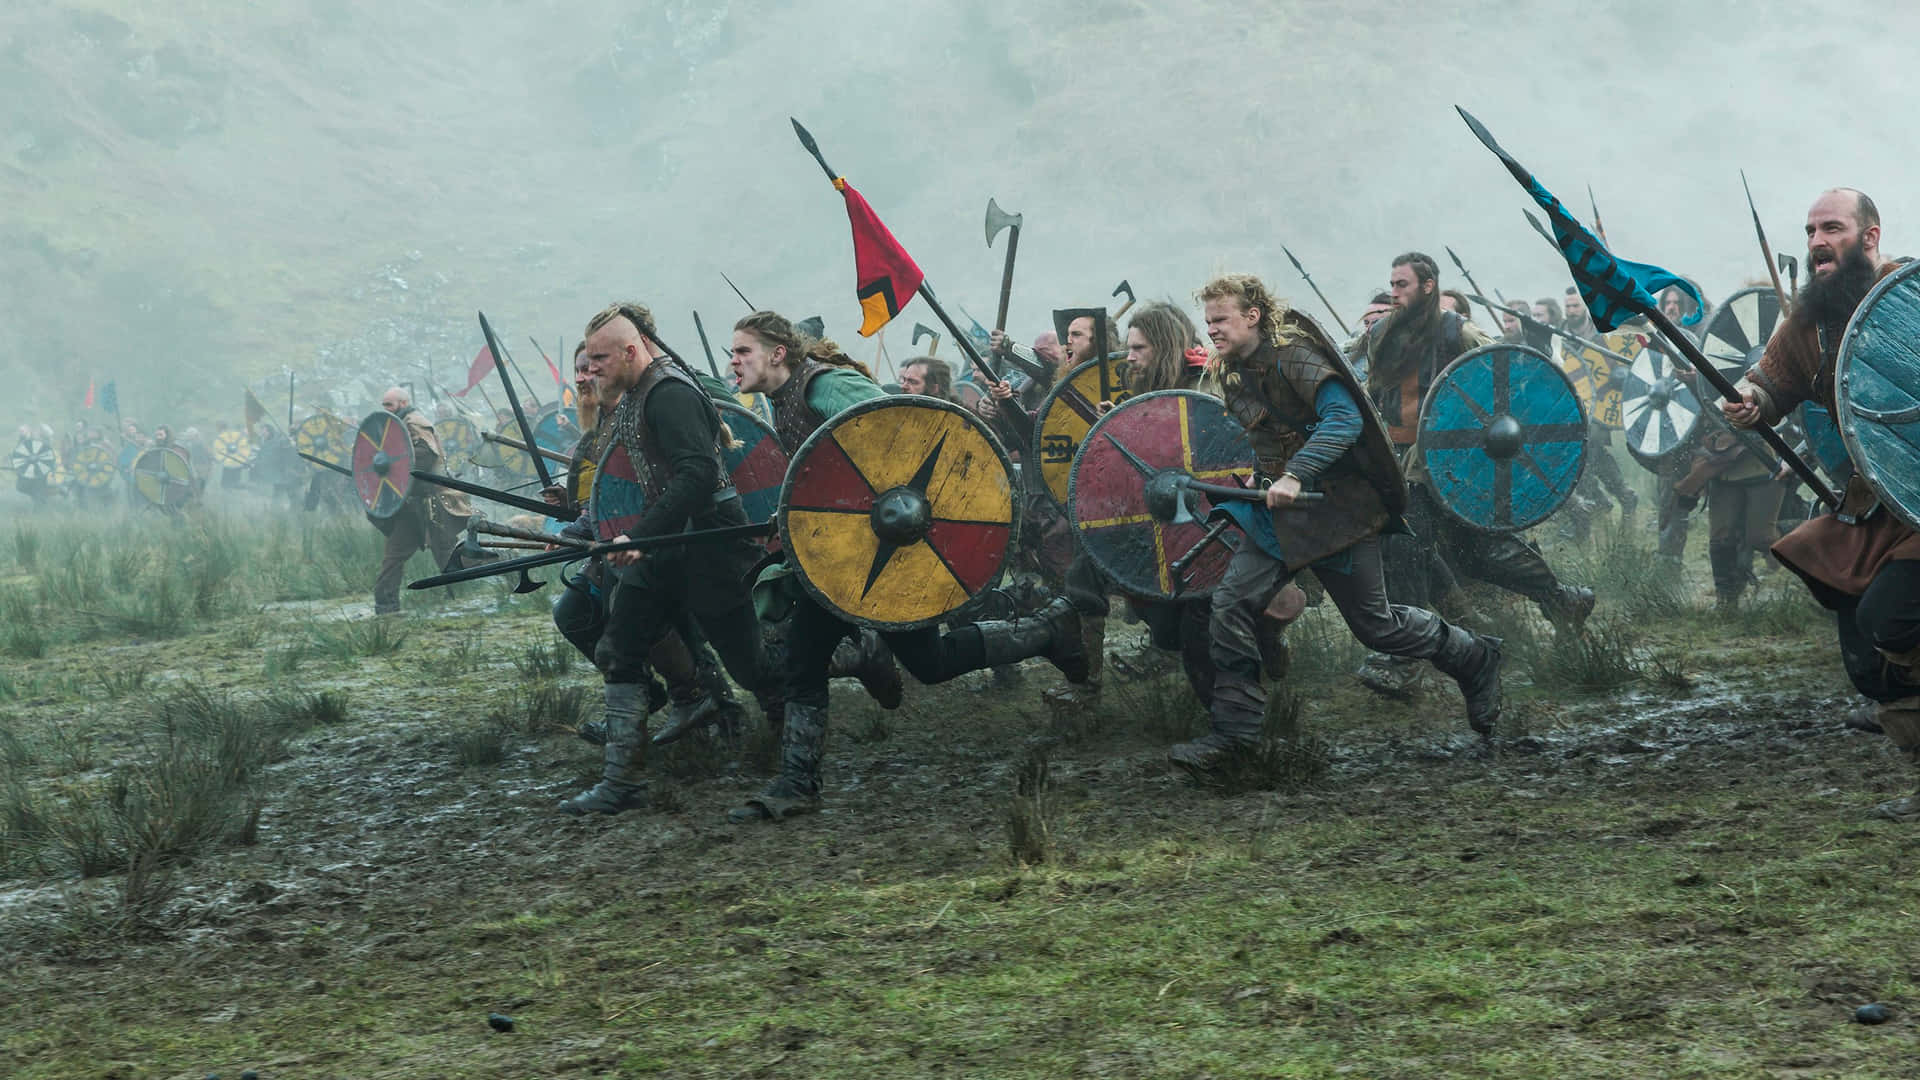 "Vikings Fight: Norsemen Ready for Battle"